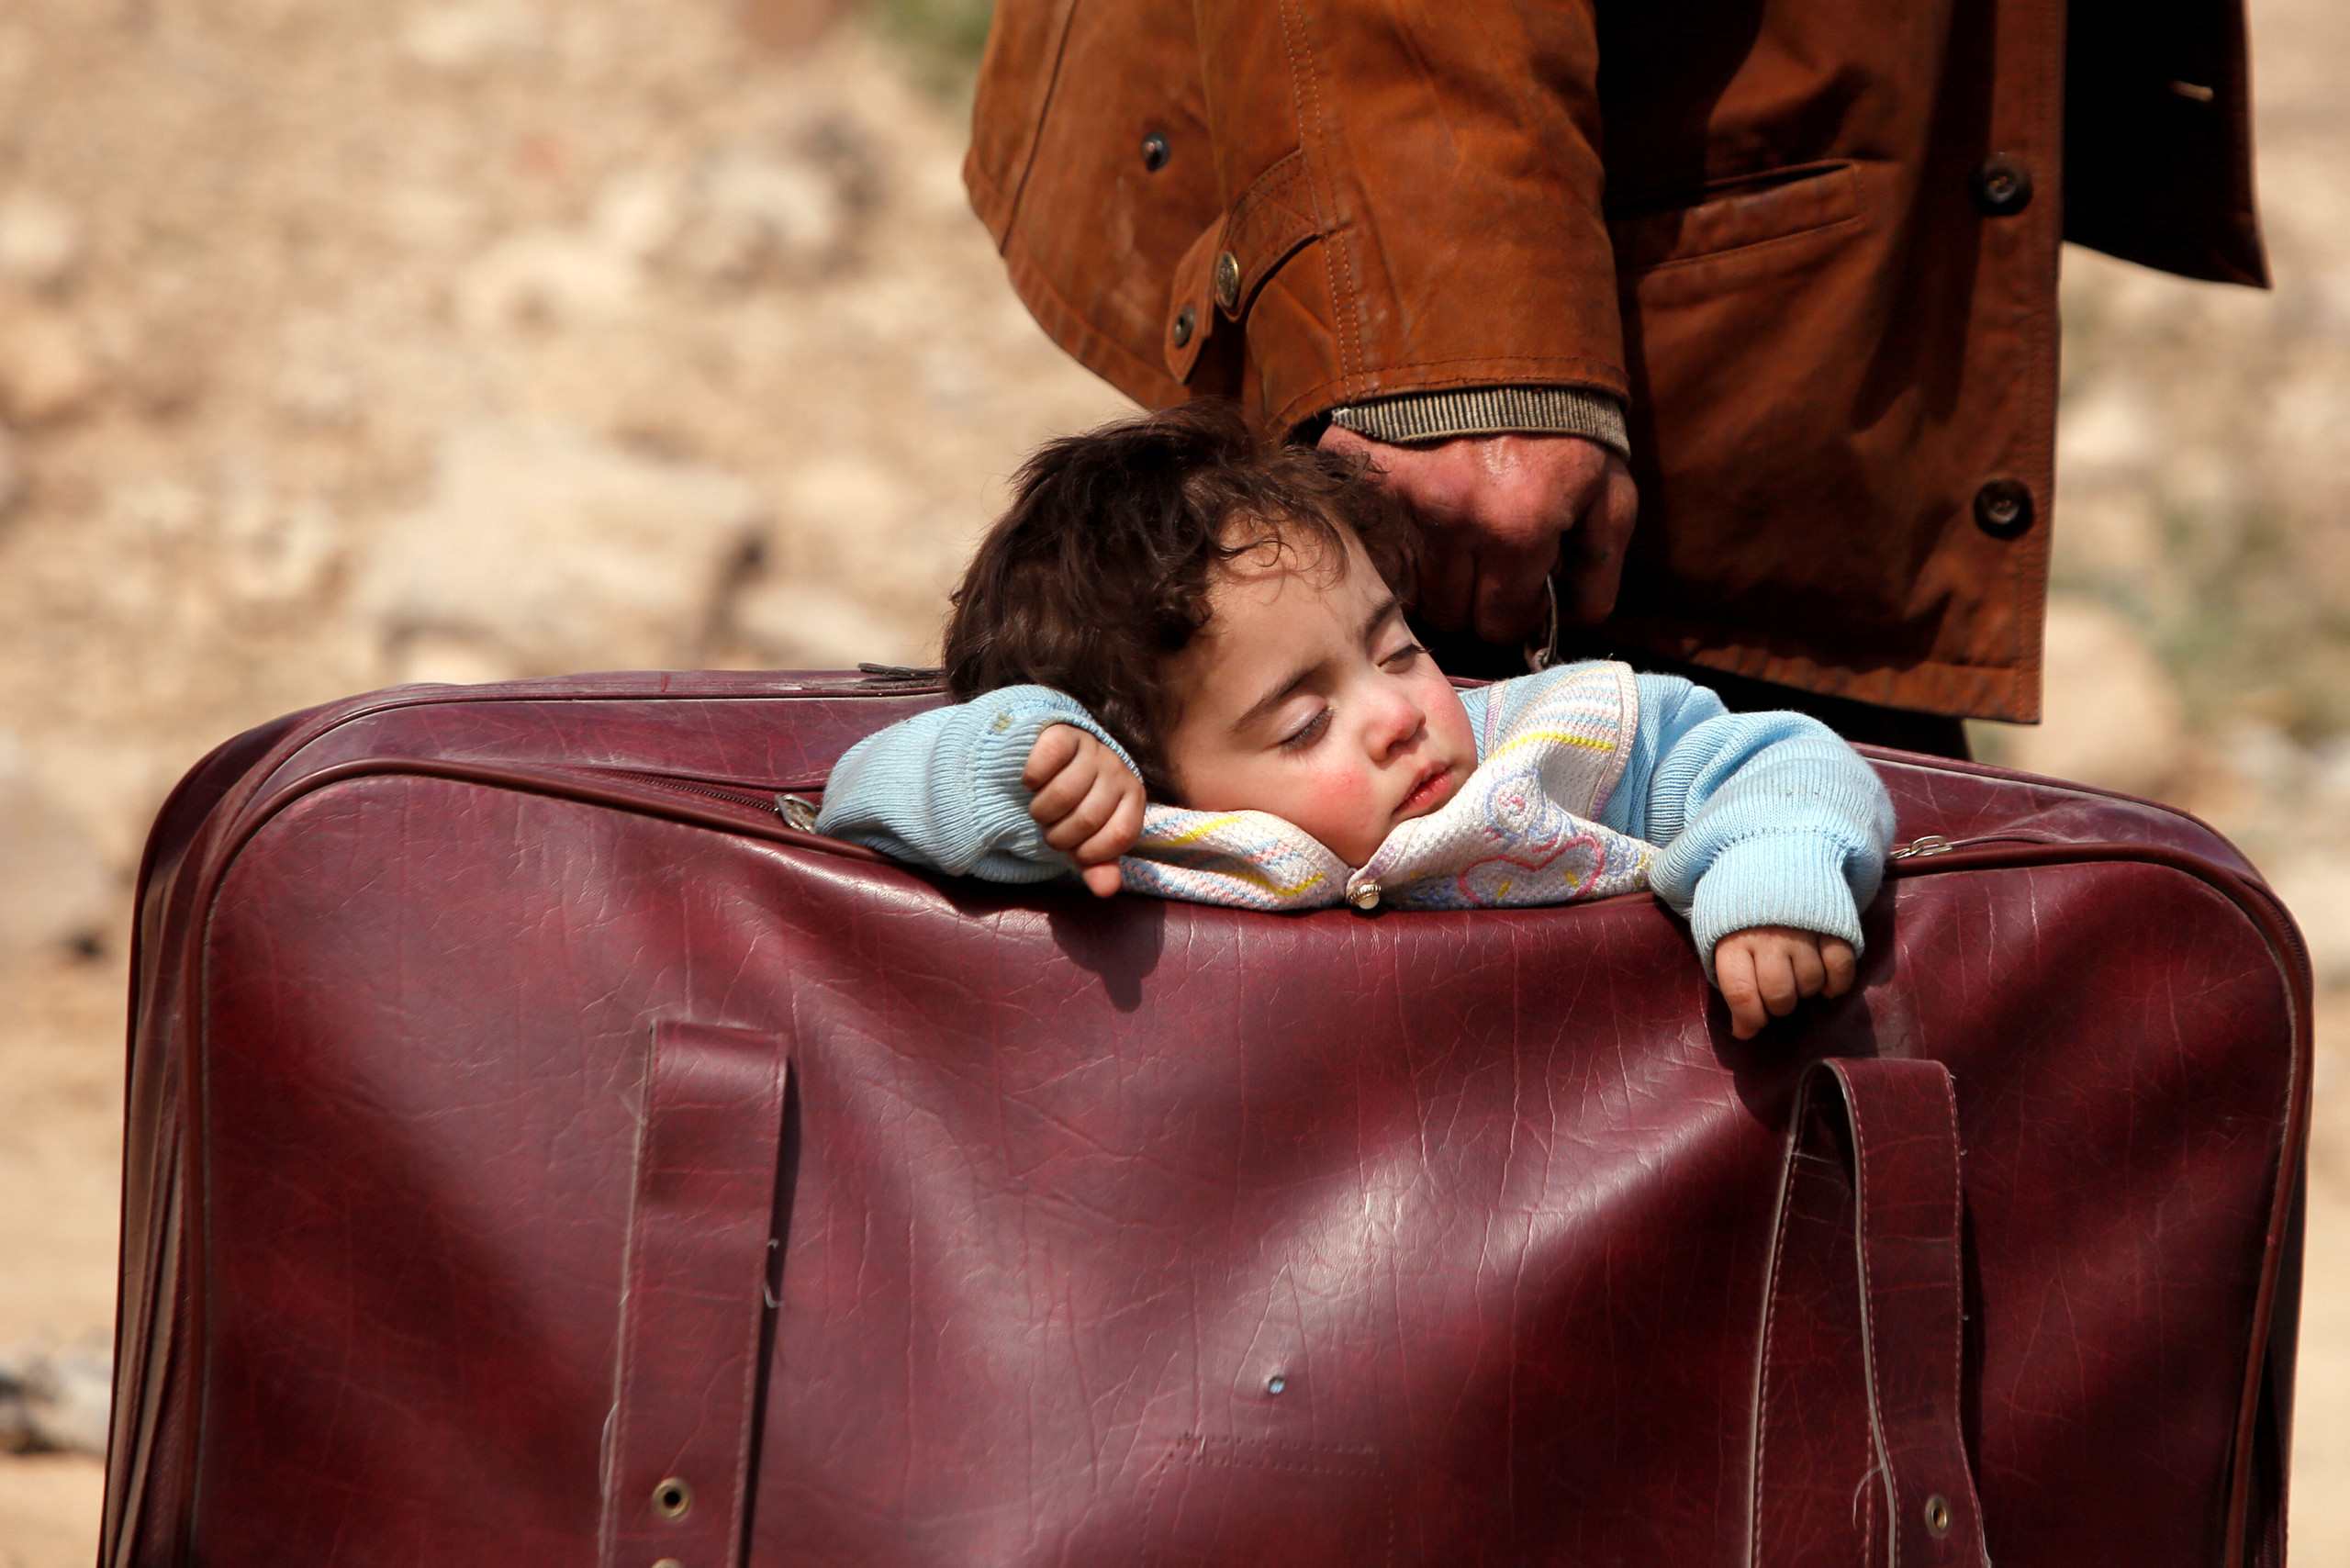 تصویری تکان دهنده از حمل کودک سوری در چمدان!